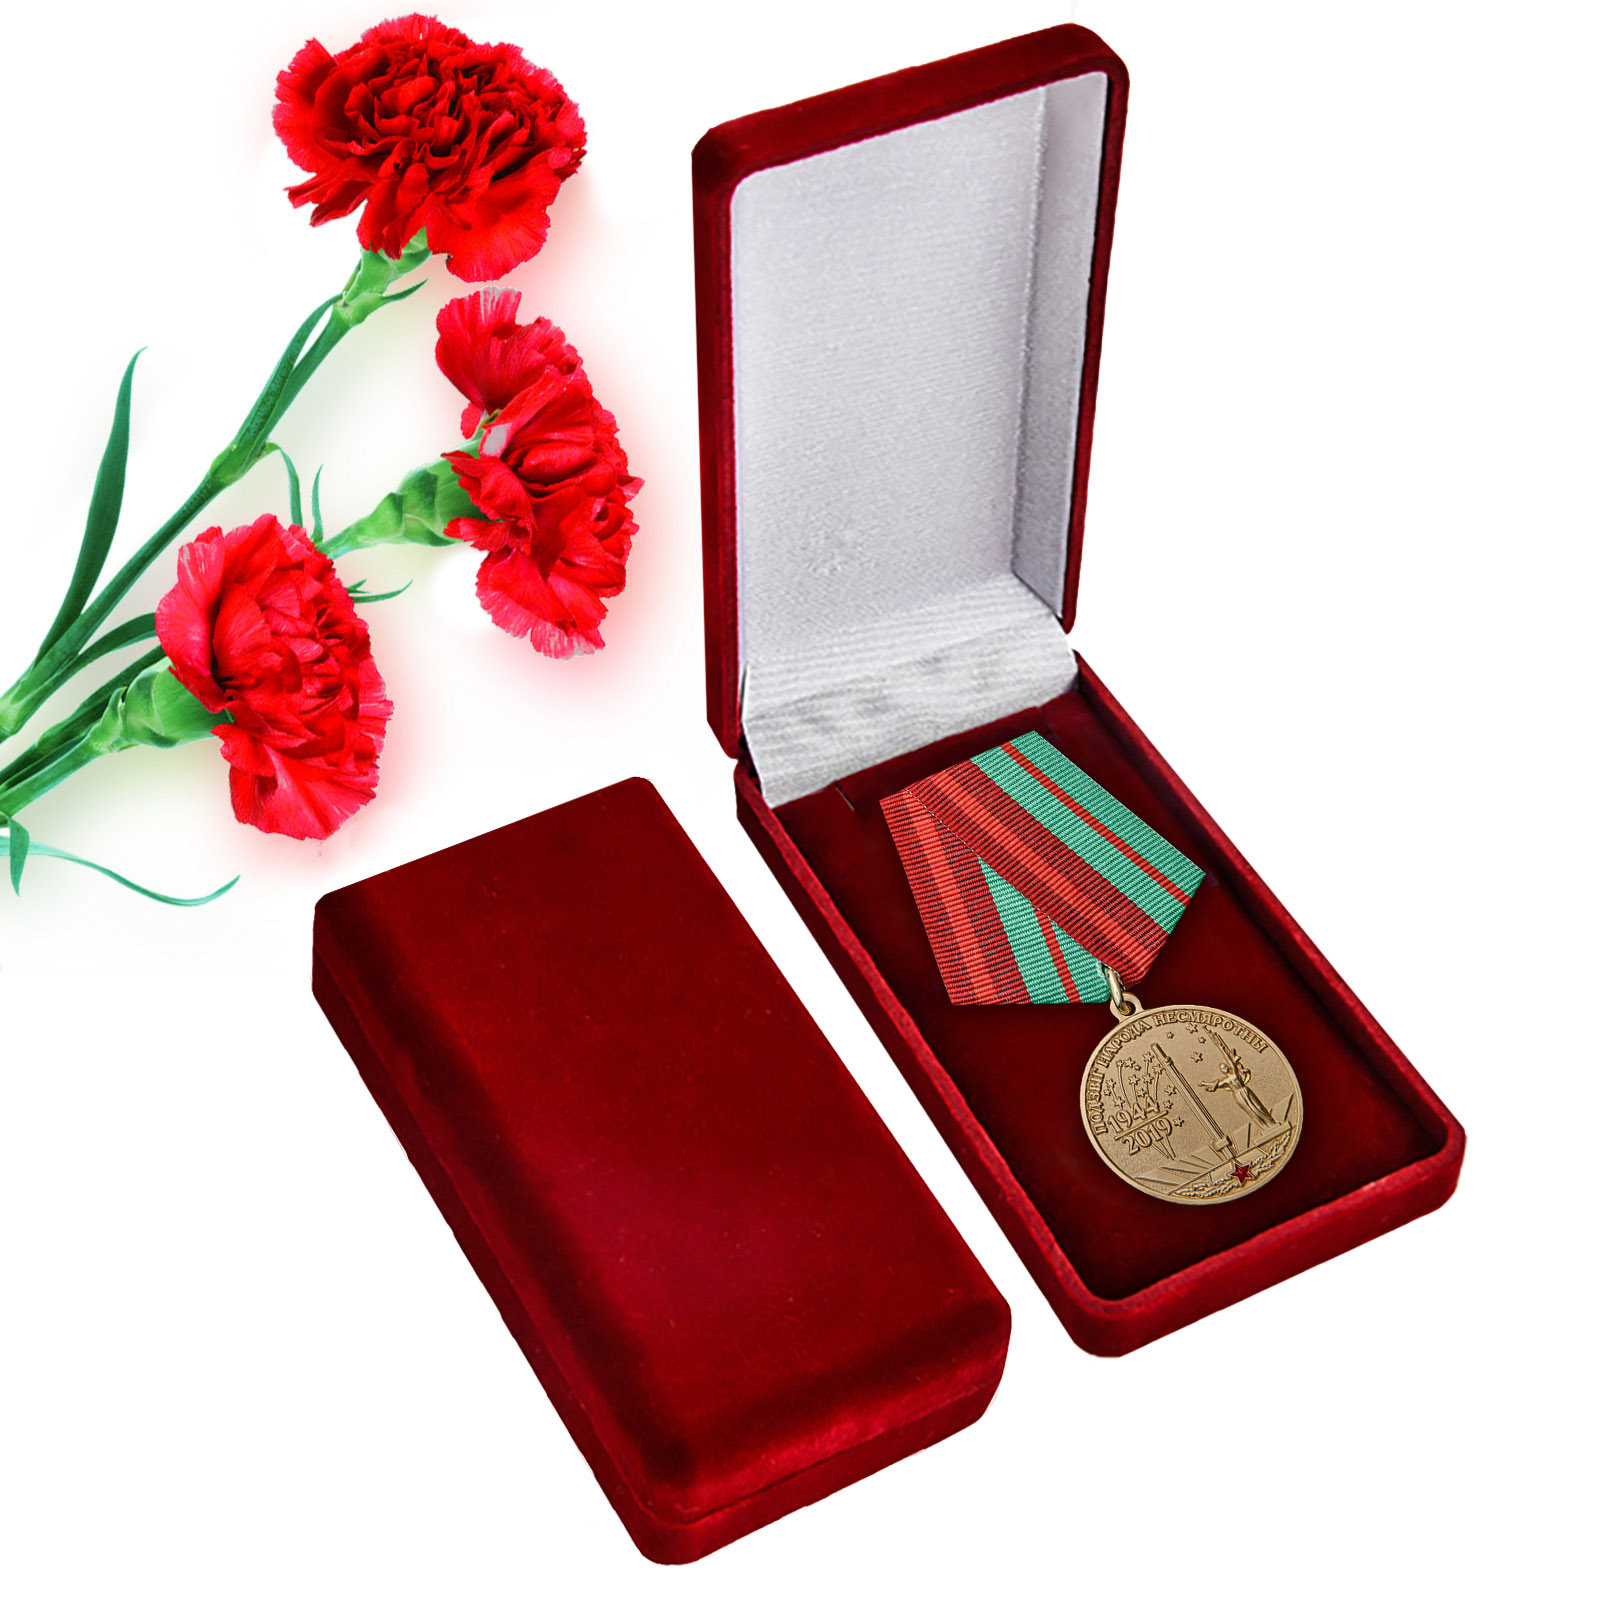 Купить юбилейную медаль 75 лет освобождения Беларуси от немецко-фашистских захватчиков онлайн